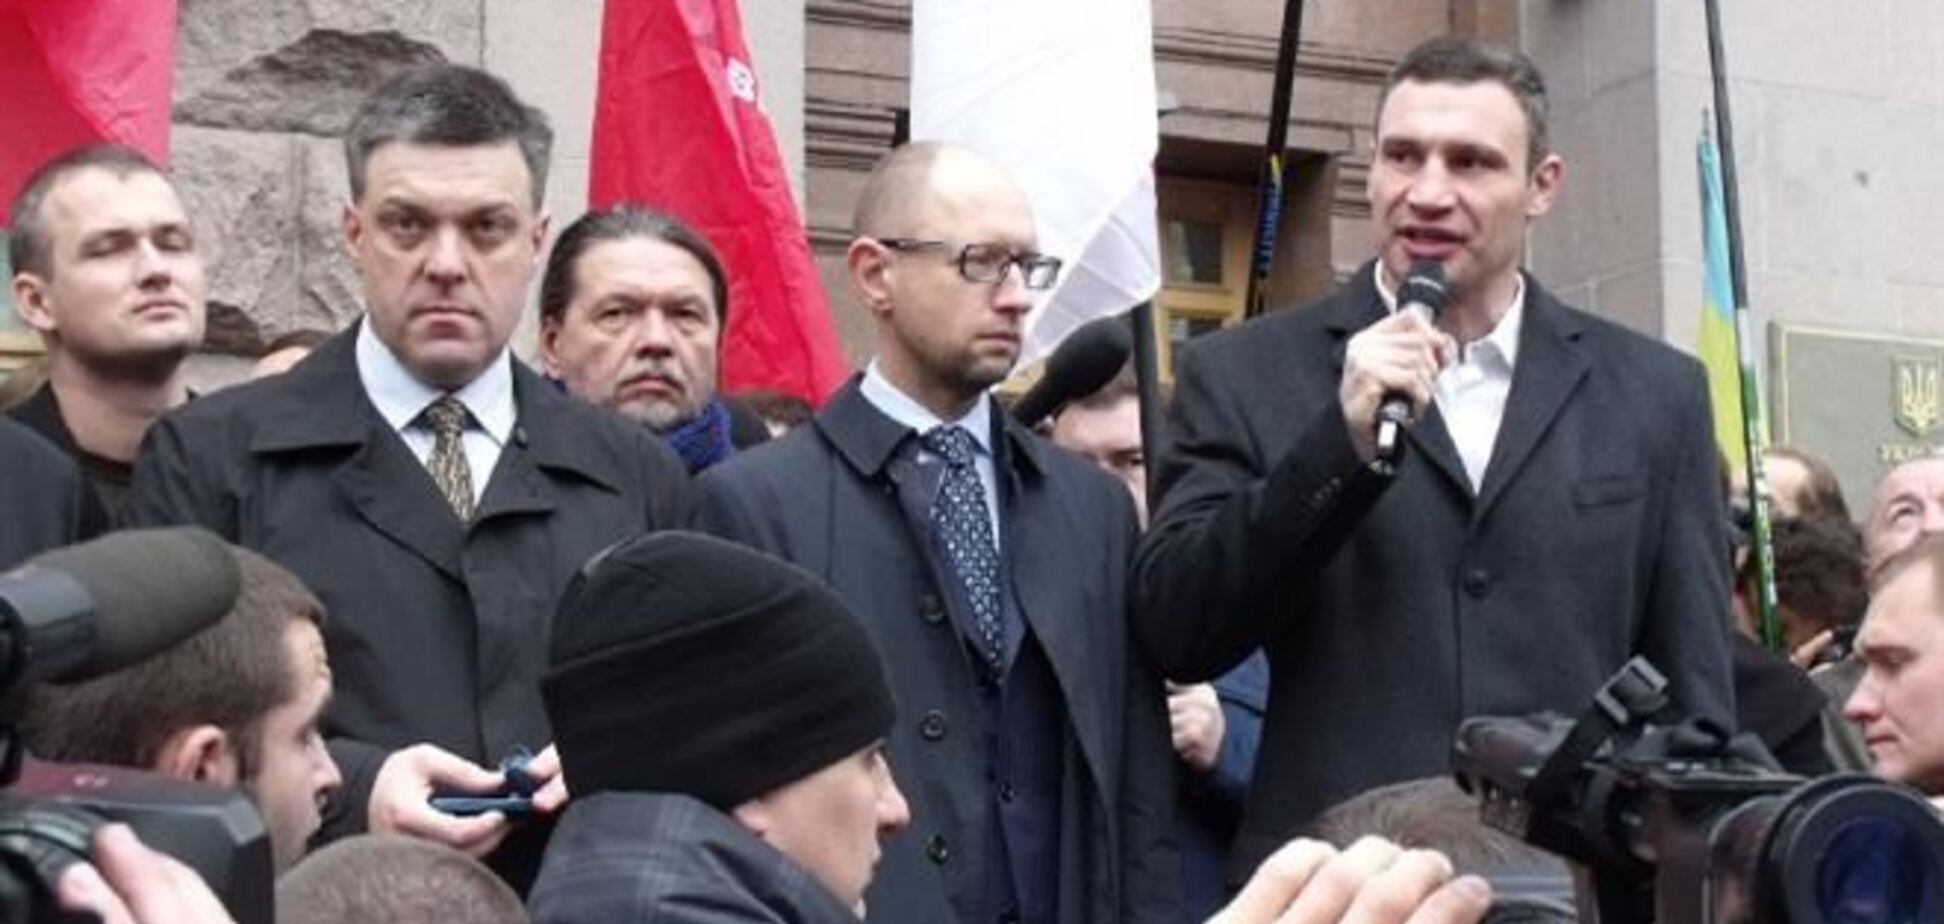 ЗМІ: Яценюк, Кличко і Тягнибок пішли до Януковича